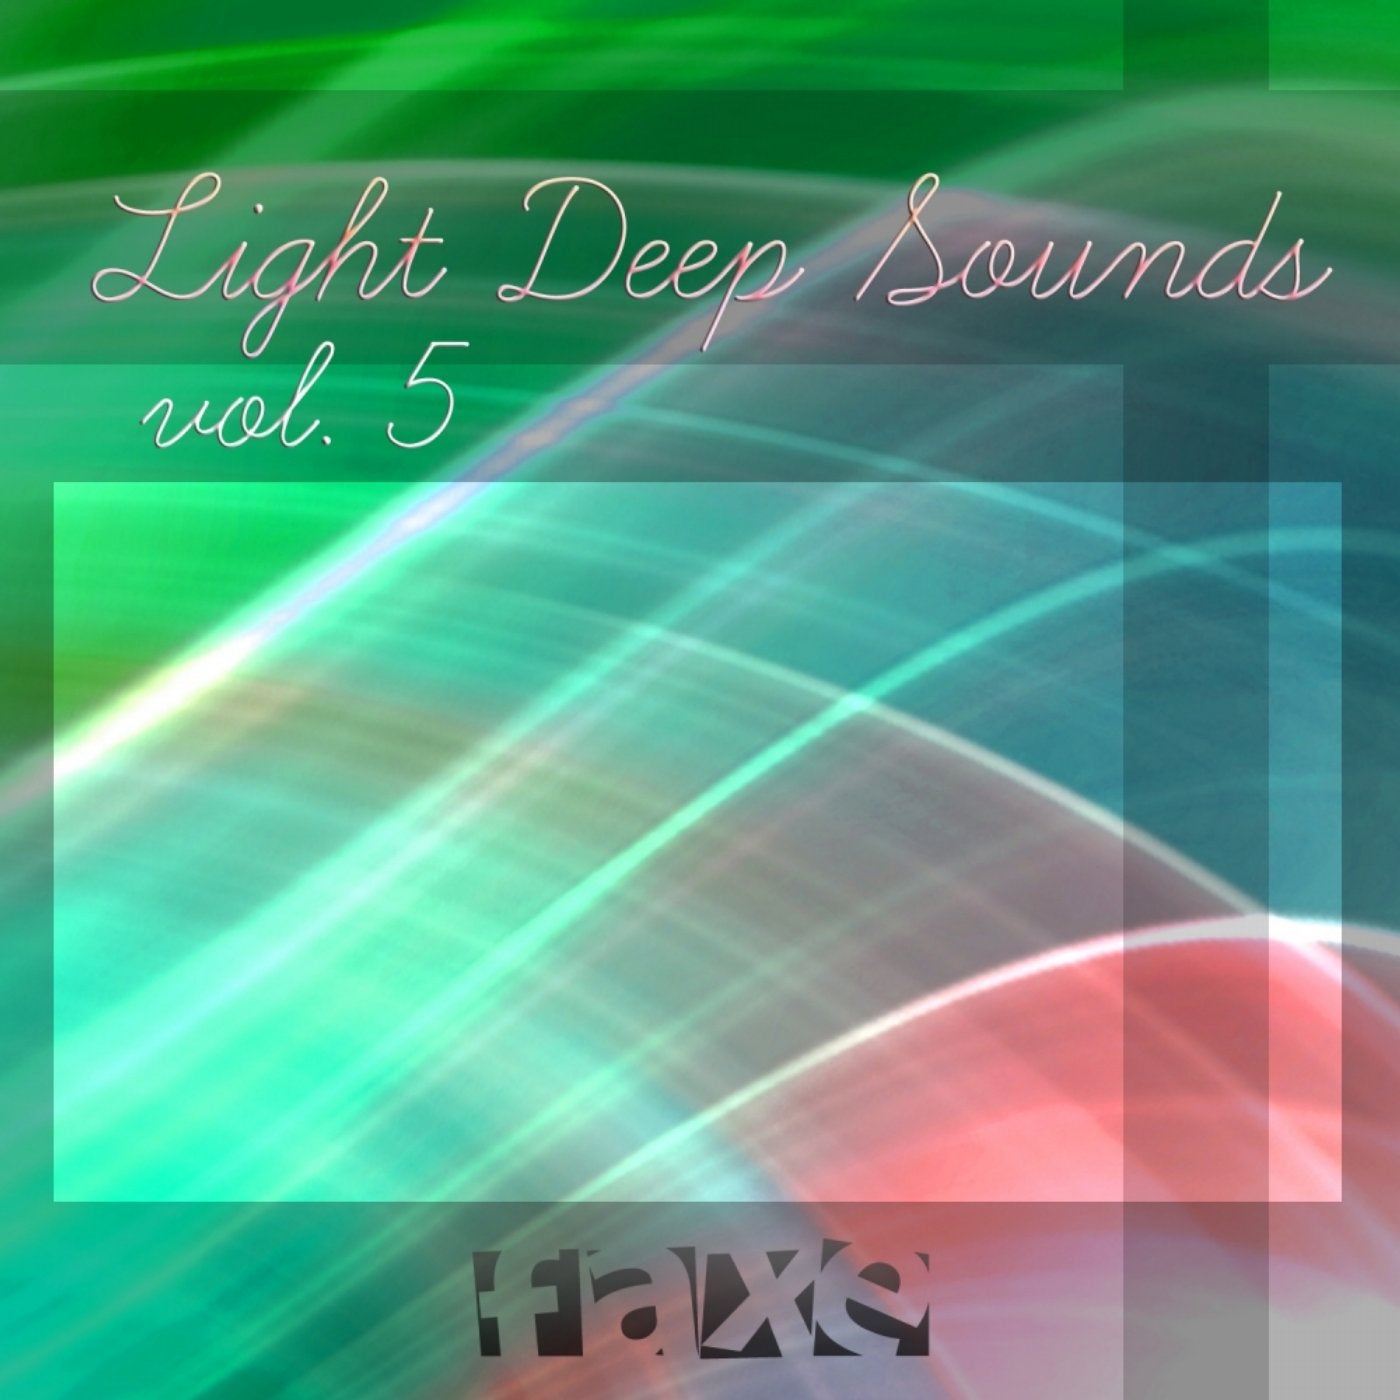 Light Deep Sounds, Vol. 5